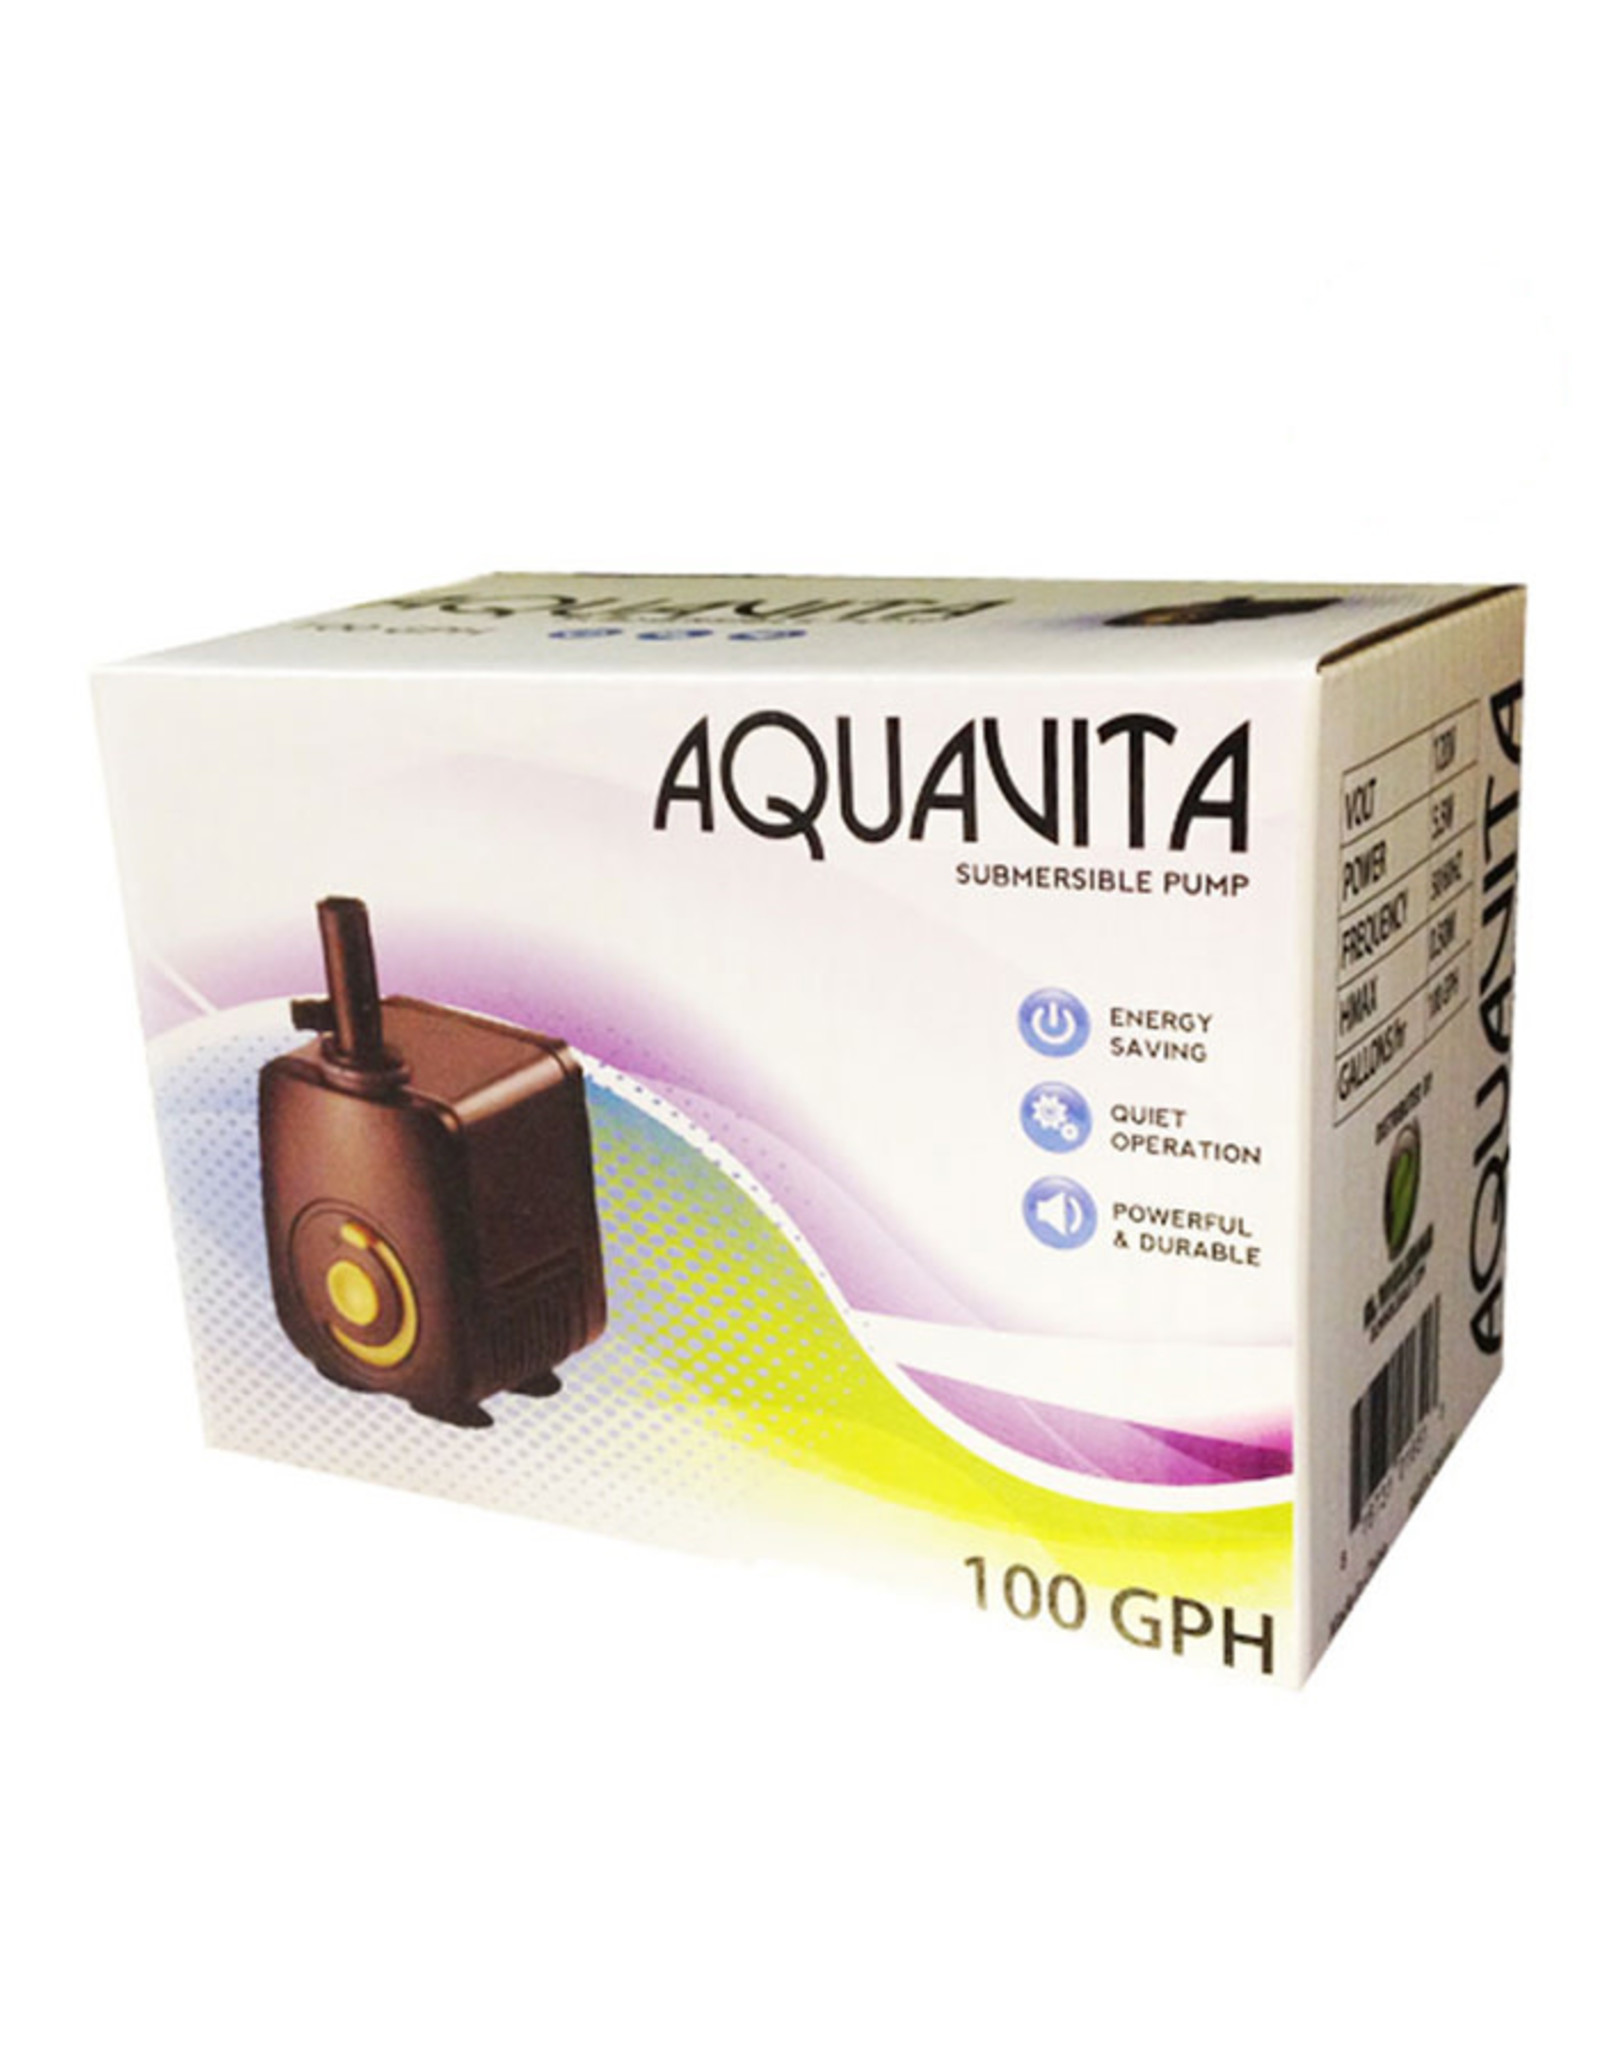 Aqua Vita AquaVita 100 Water Pump